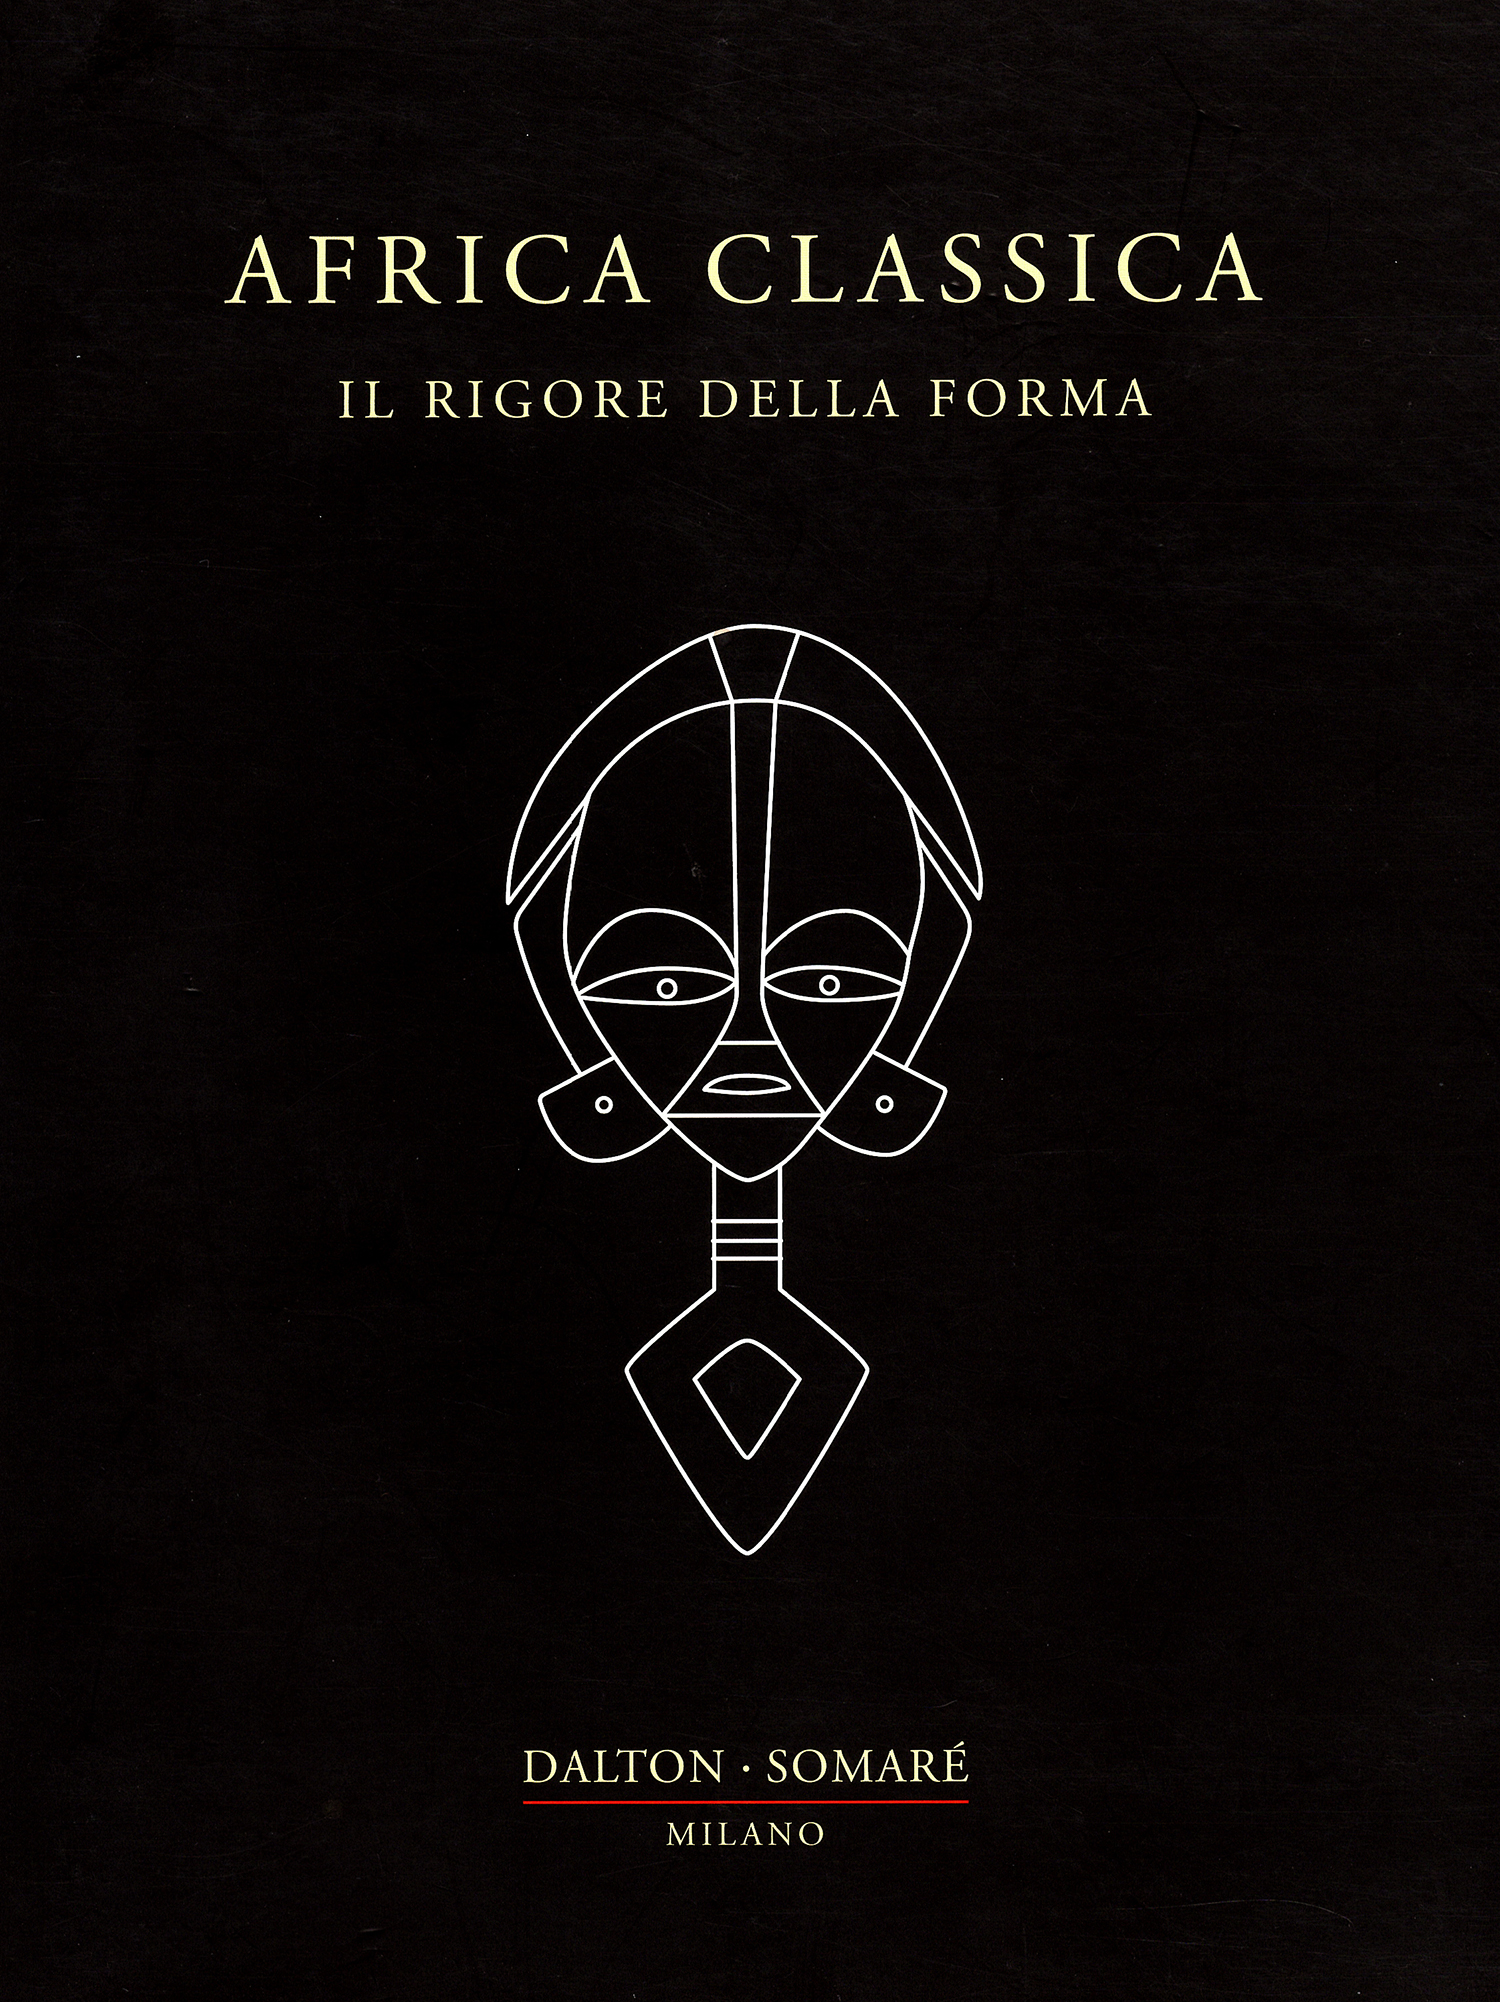 Catalogo Africa Classica a cura della Galleria Dalton Somaré